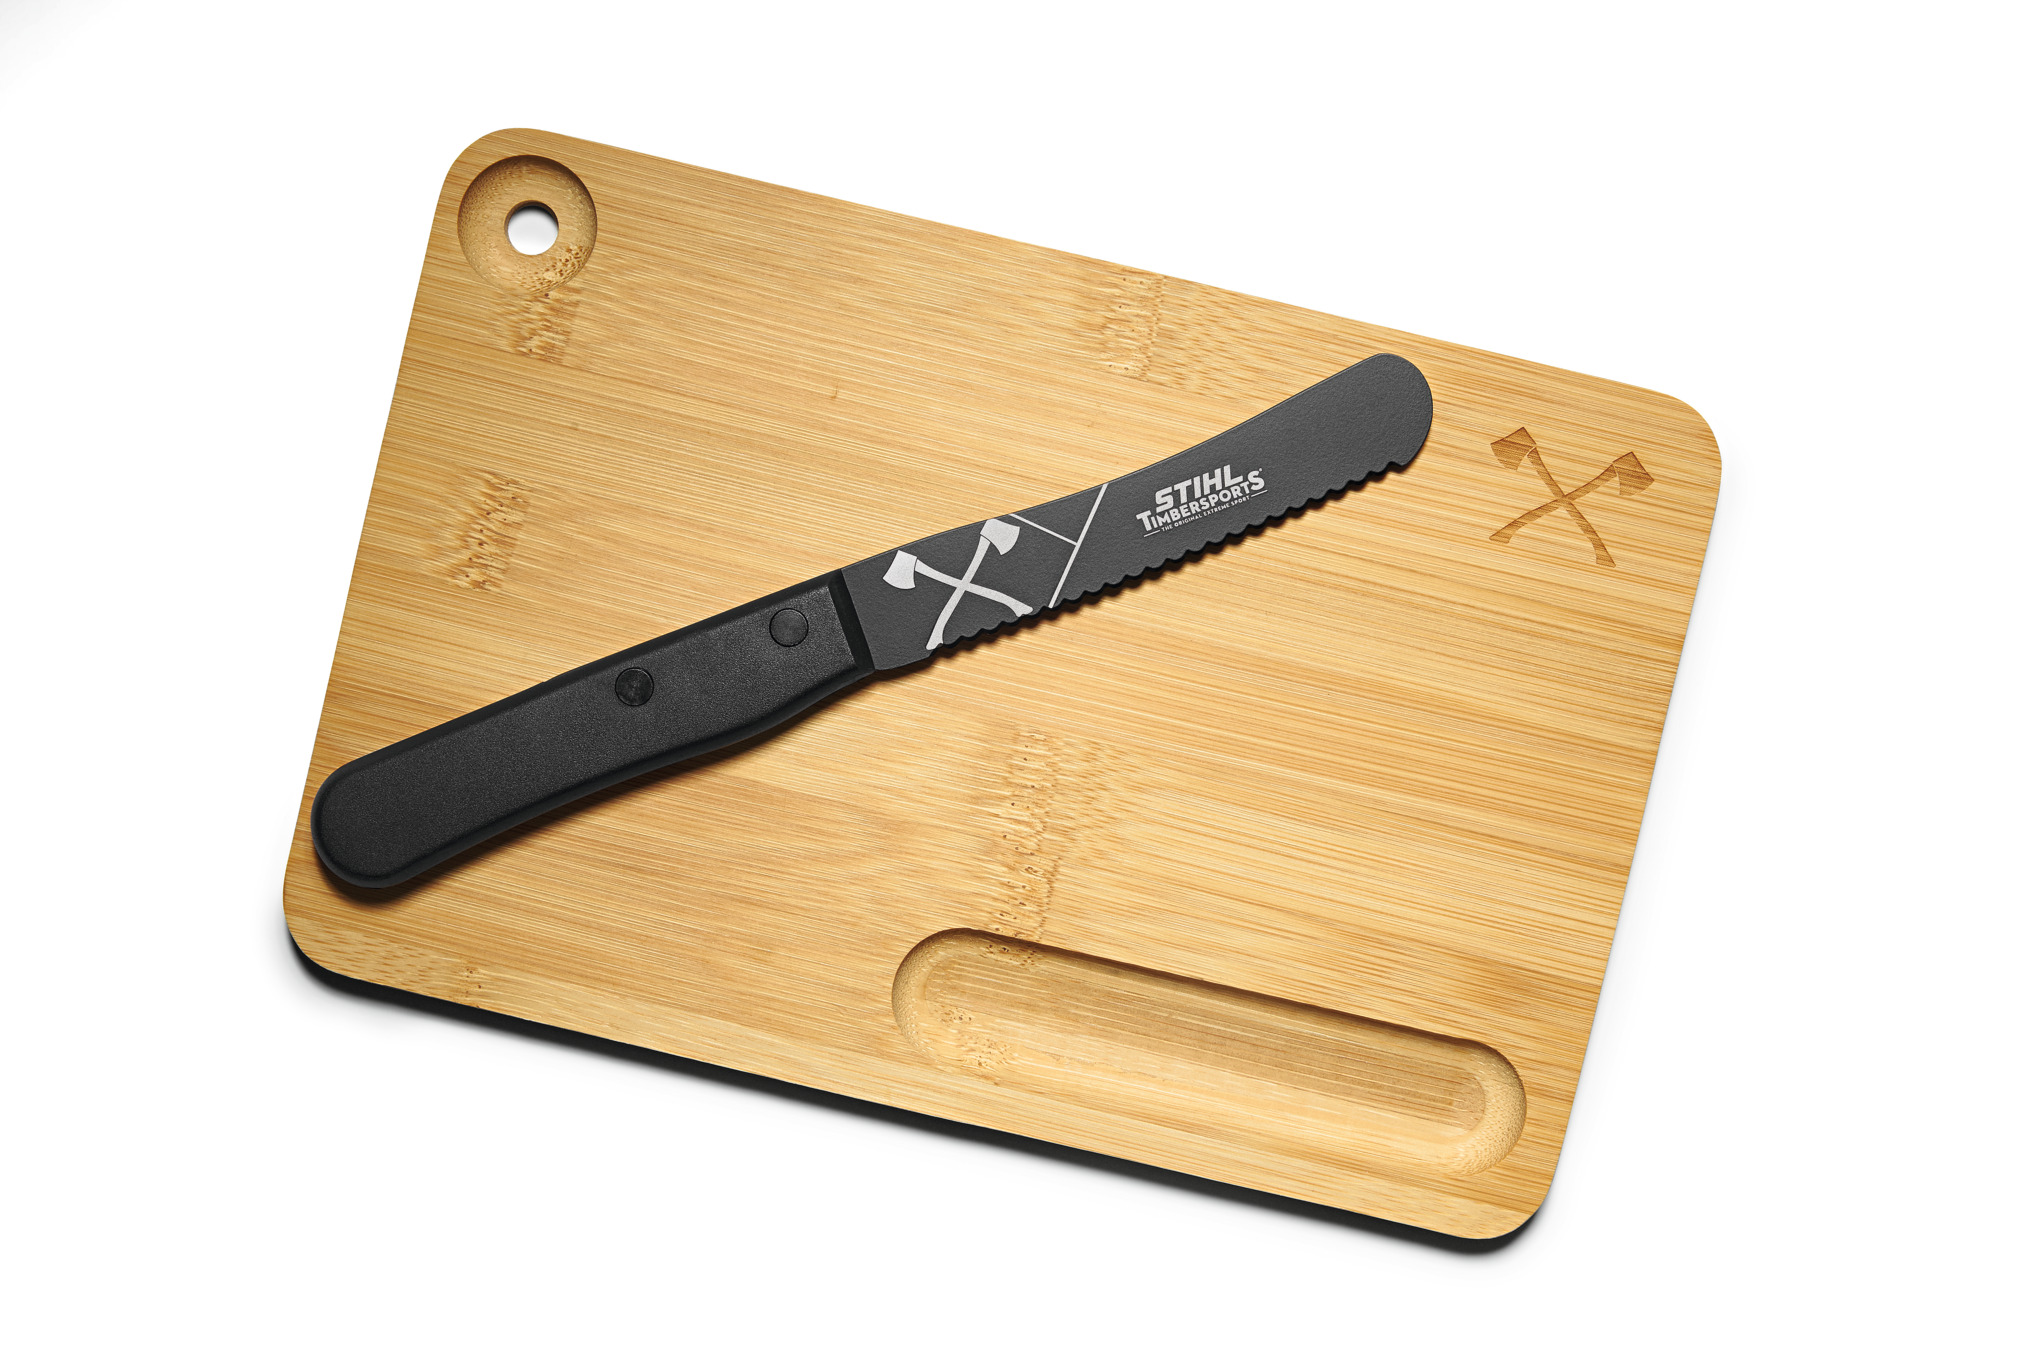 Tabla de cortar con cuchillo. 2en1 Timbersports Edition